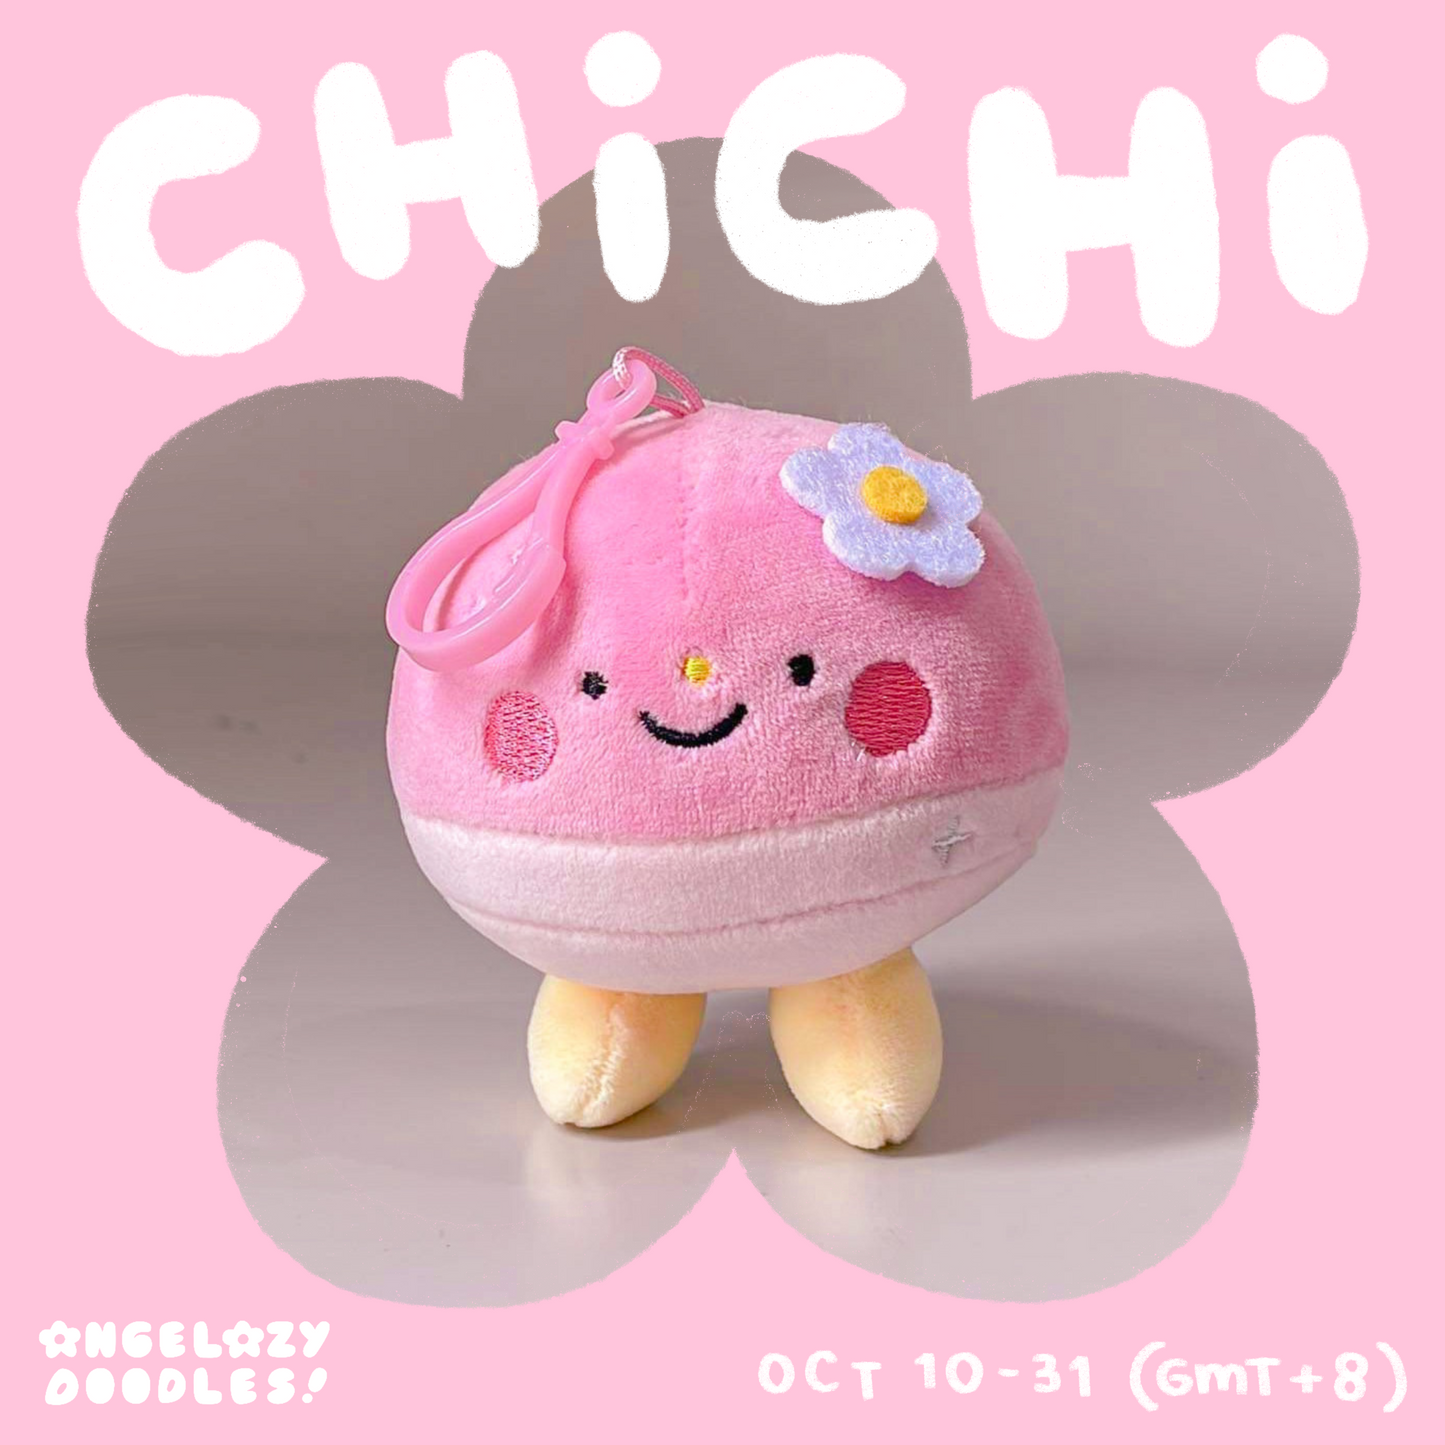 Chichi ! (Pre-Orders)